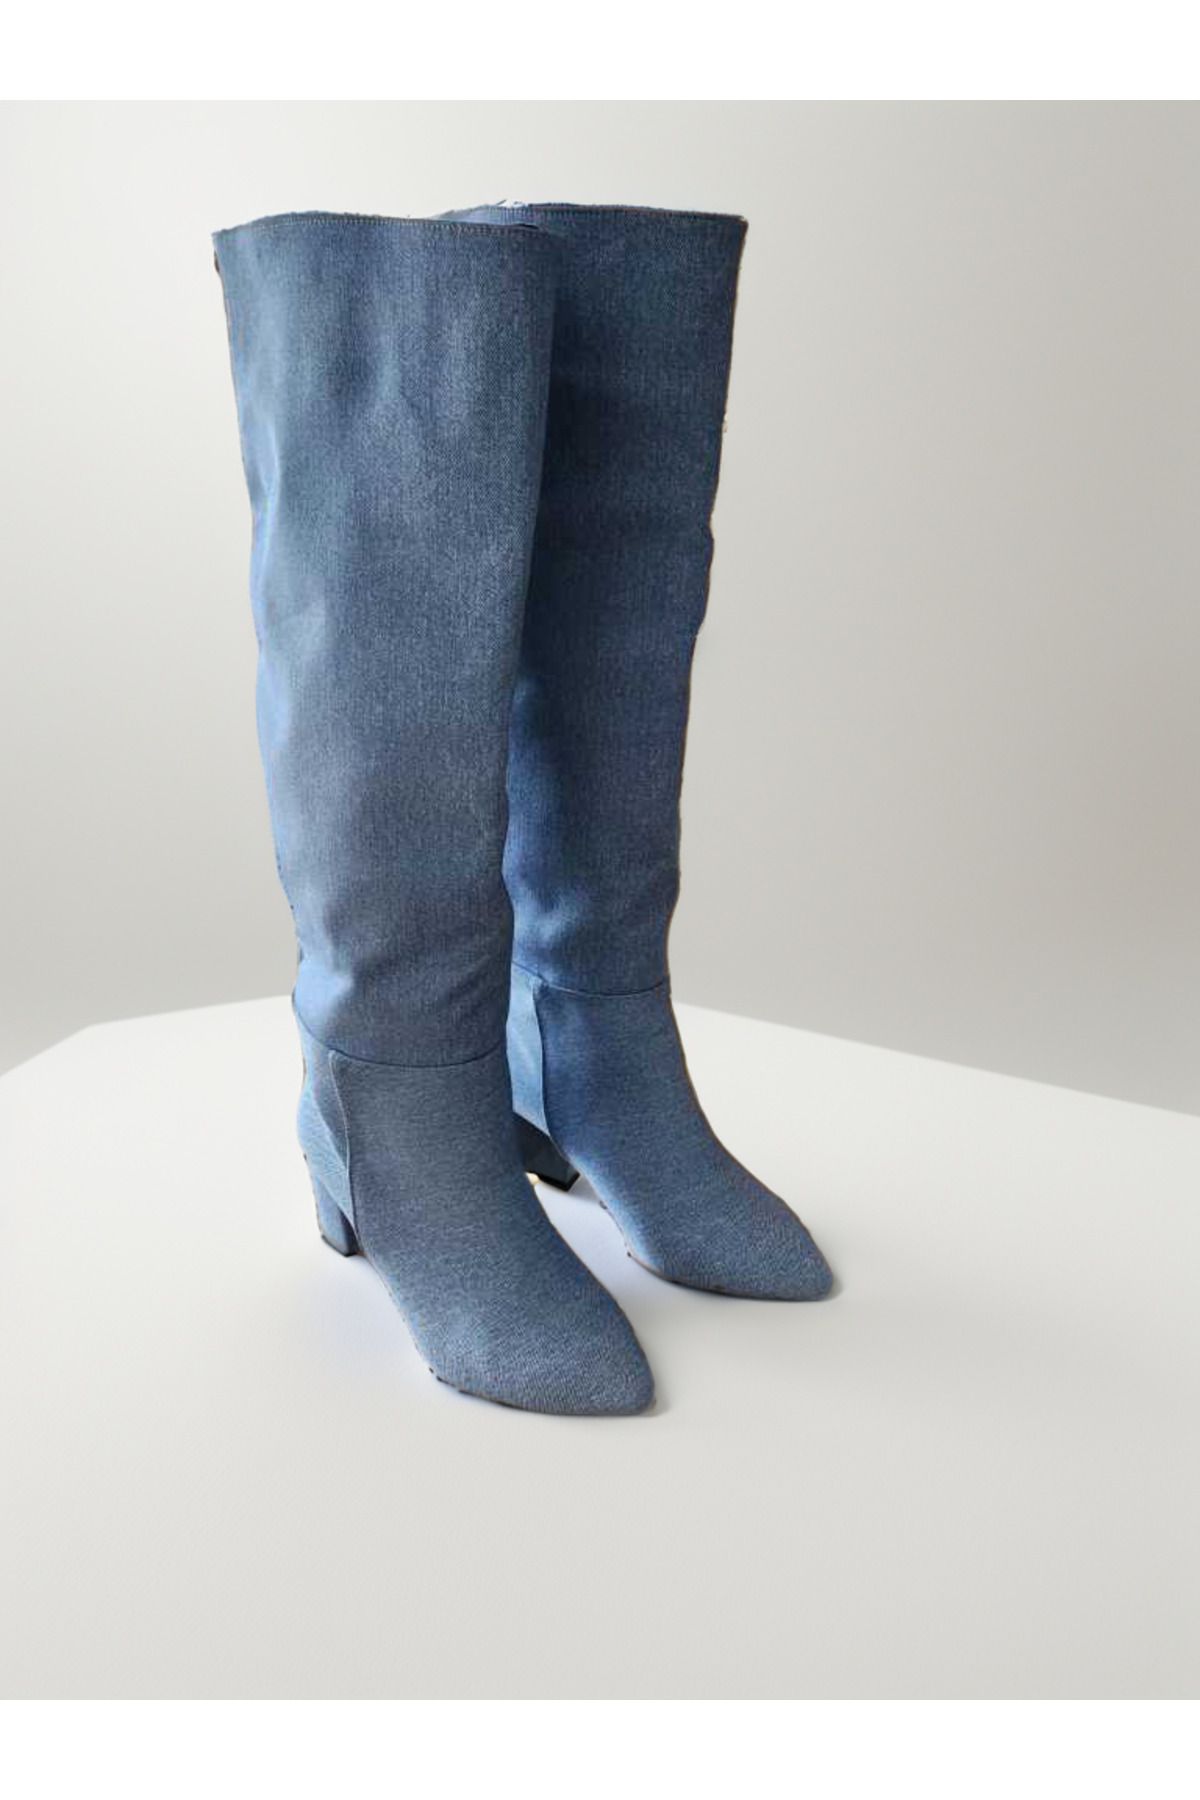 INCENTIVE Kadın Mavi Denim Topuklu Çizme